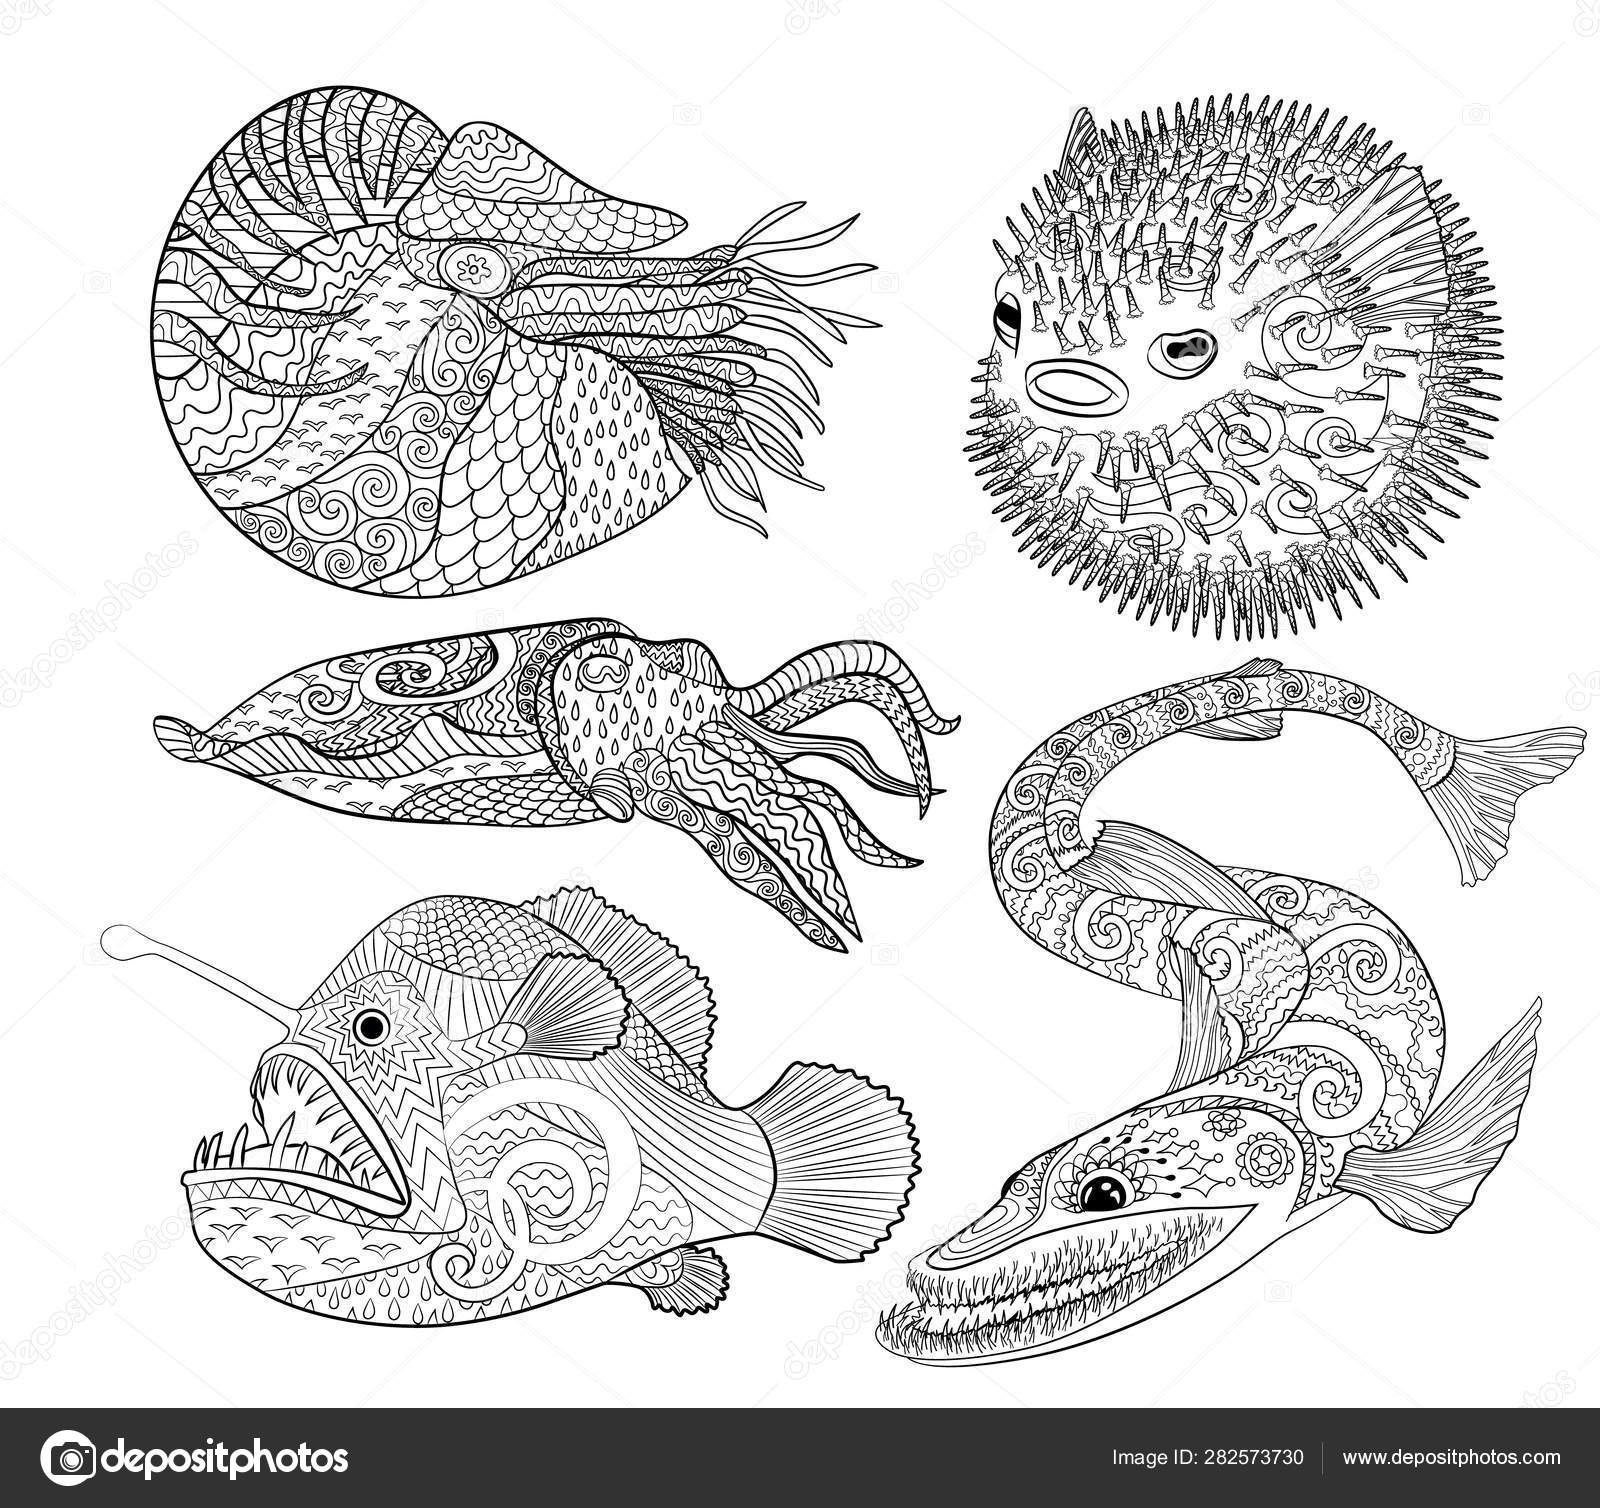 Desenho de Peixes para Colorir - Colorir.com